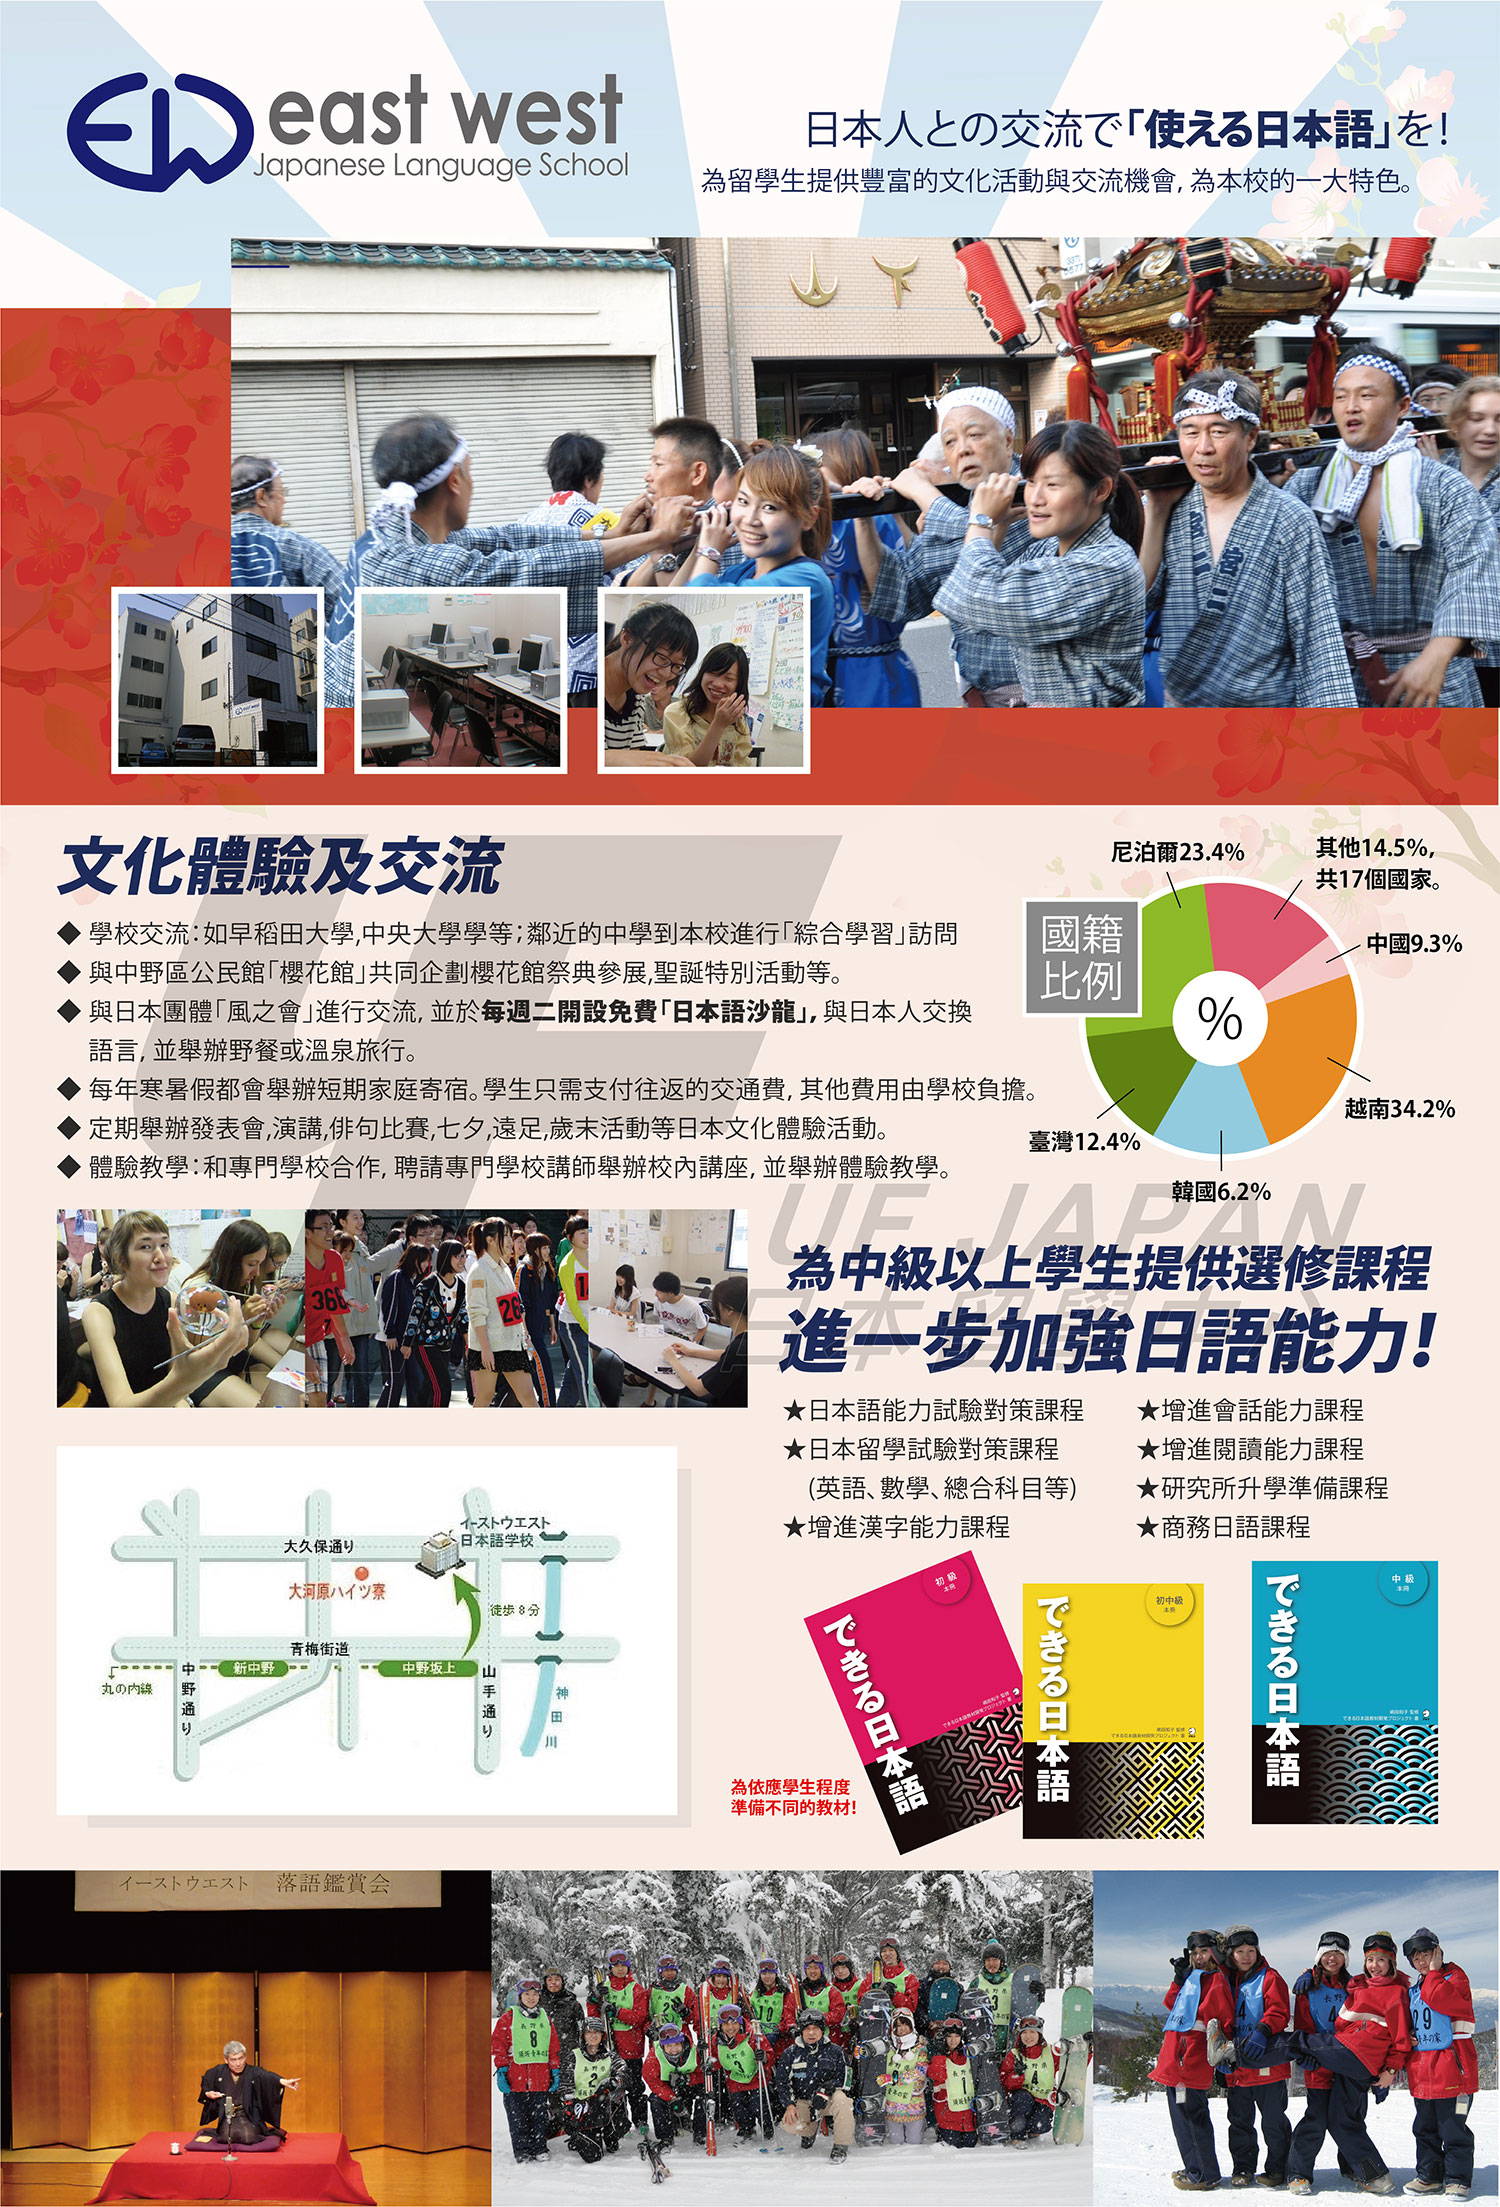 2016日本留學展參展單位-EAST WEST日本語學校